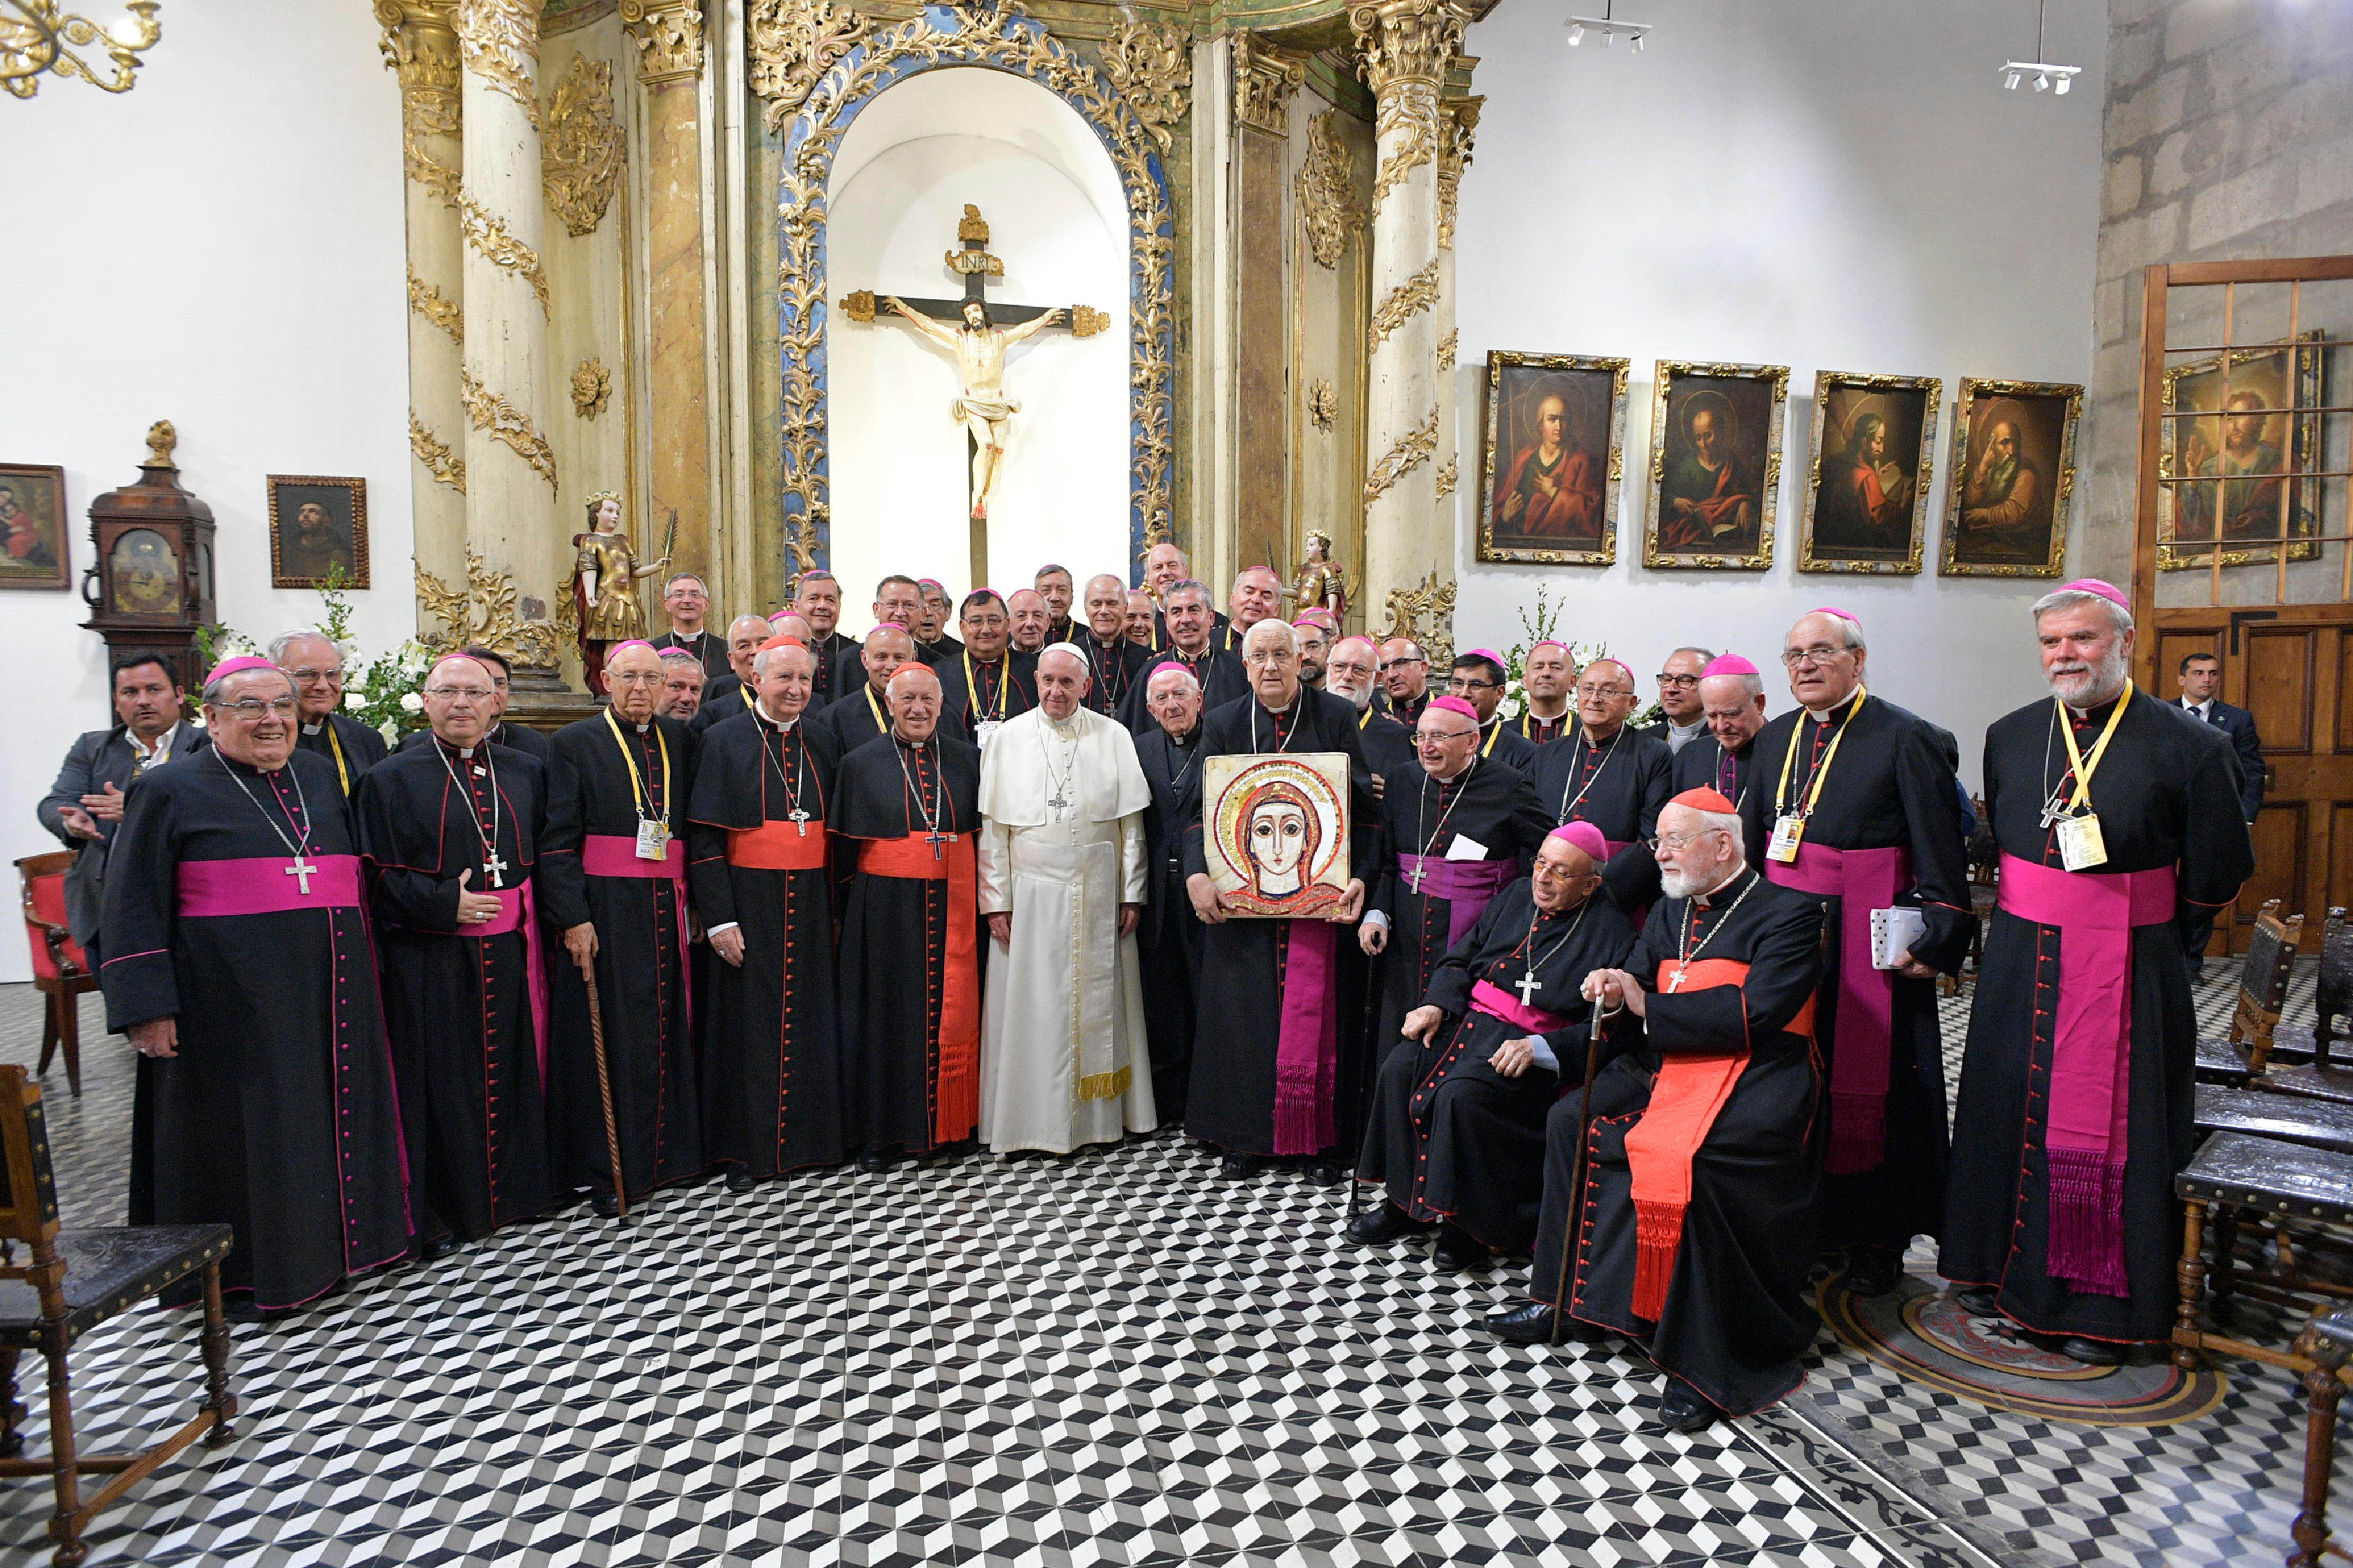 Rencontre avec les évêques, cathédrale de Santiago, Chili © Vatican Media